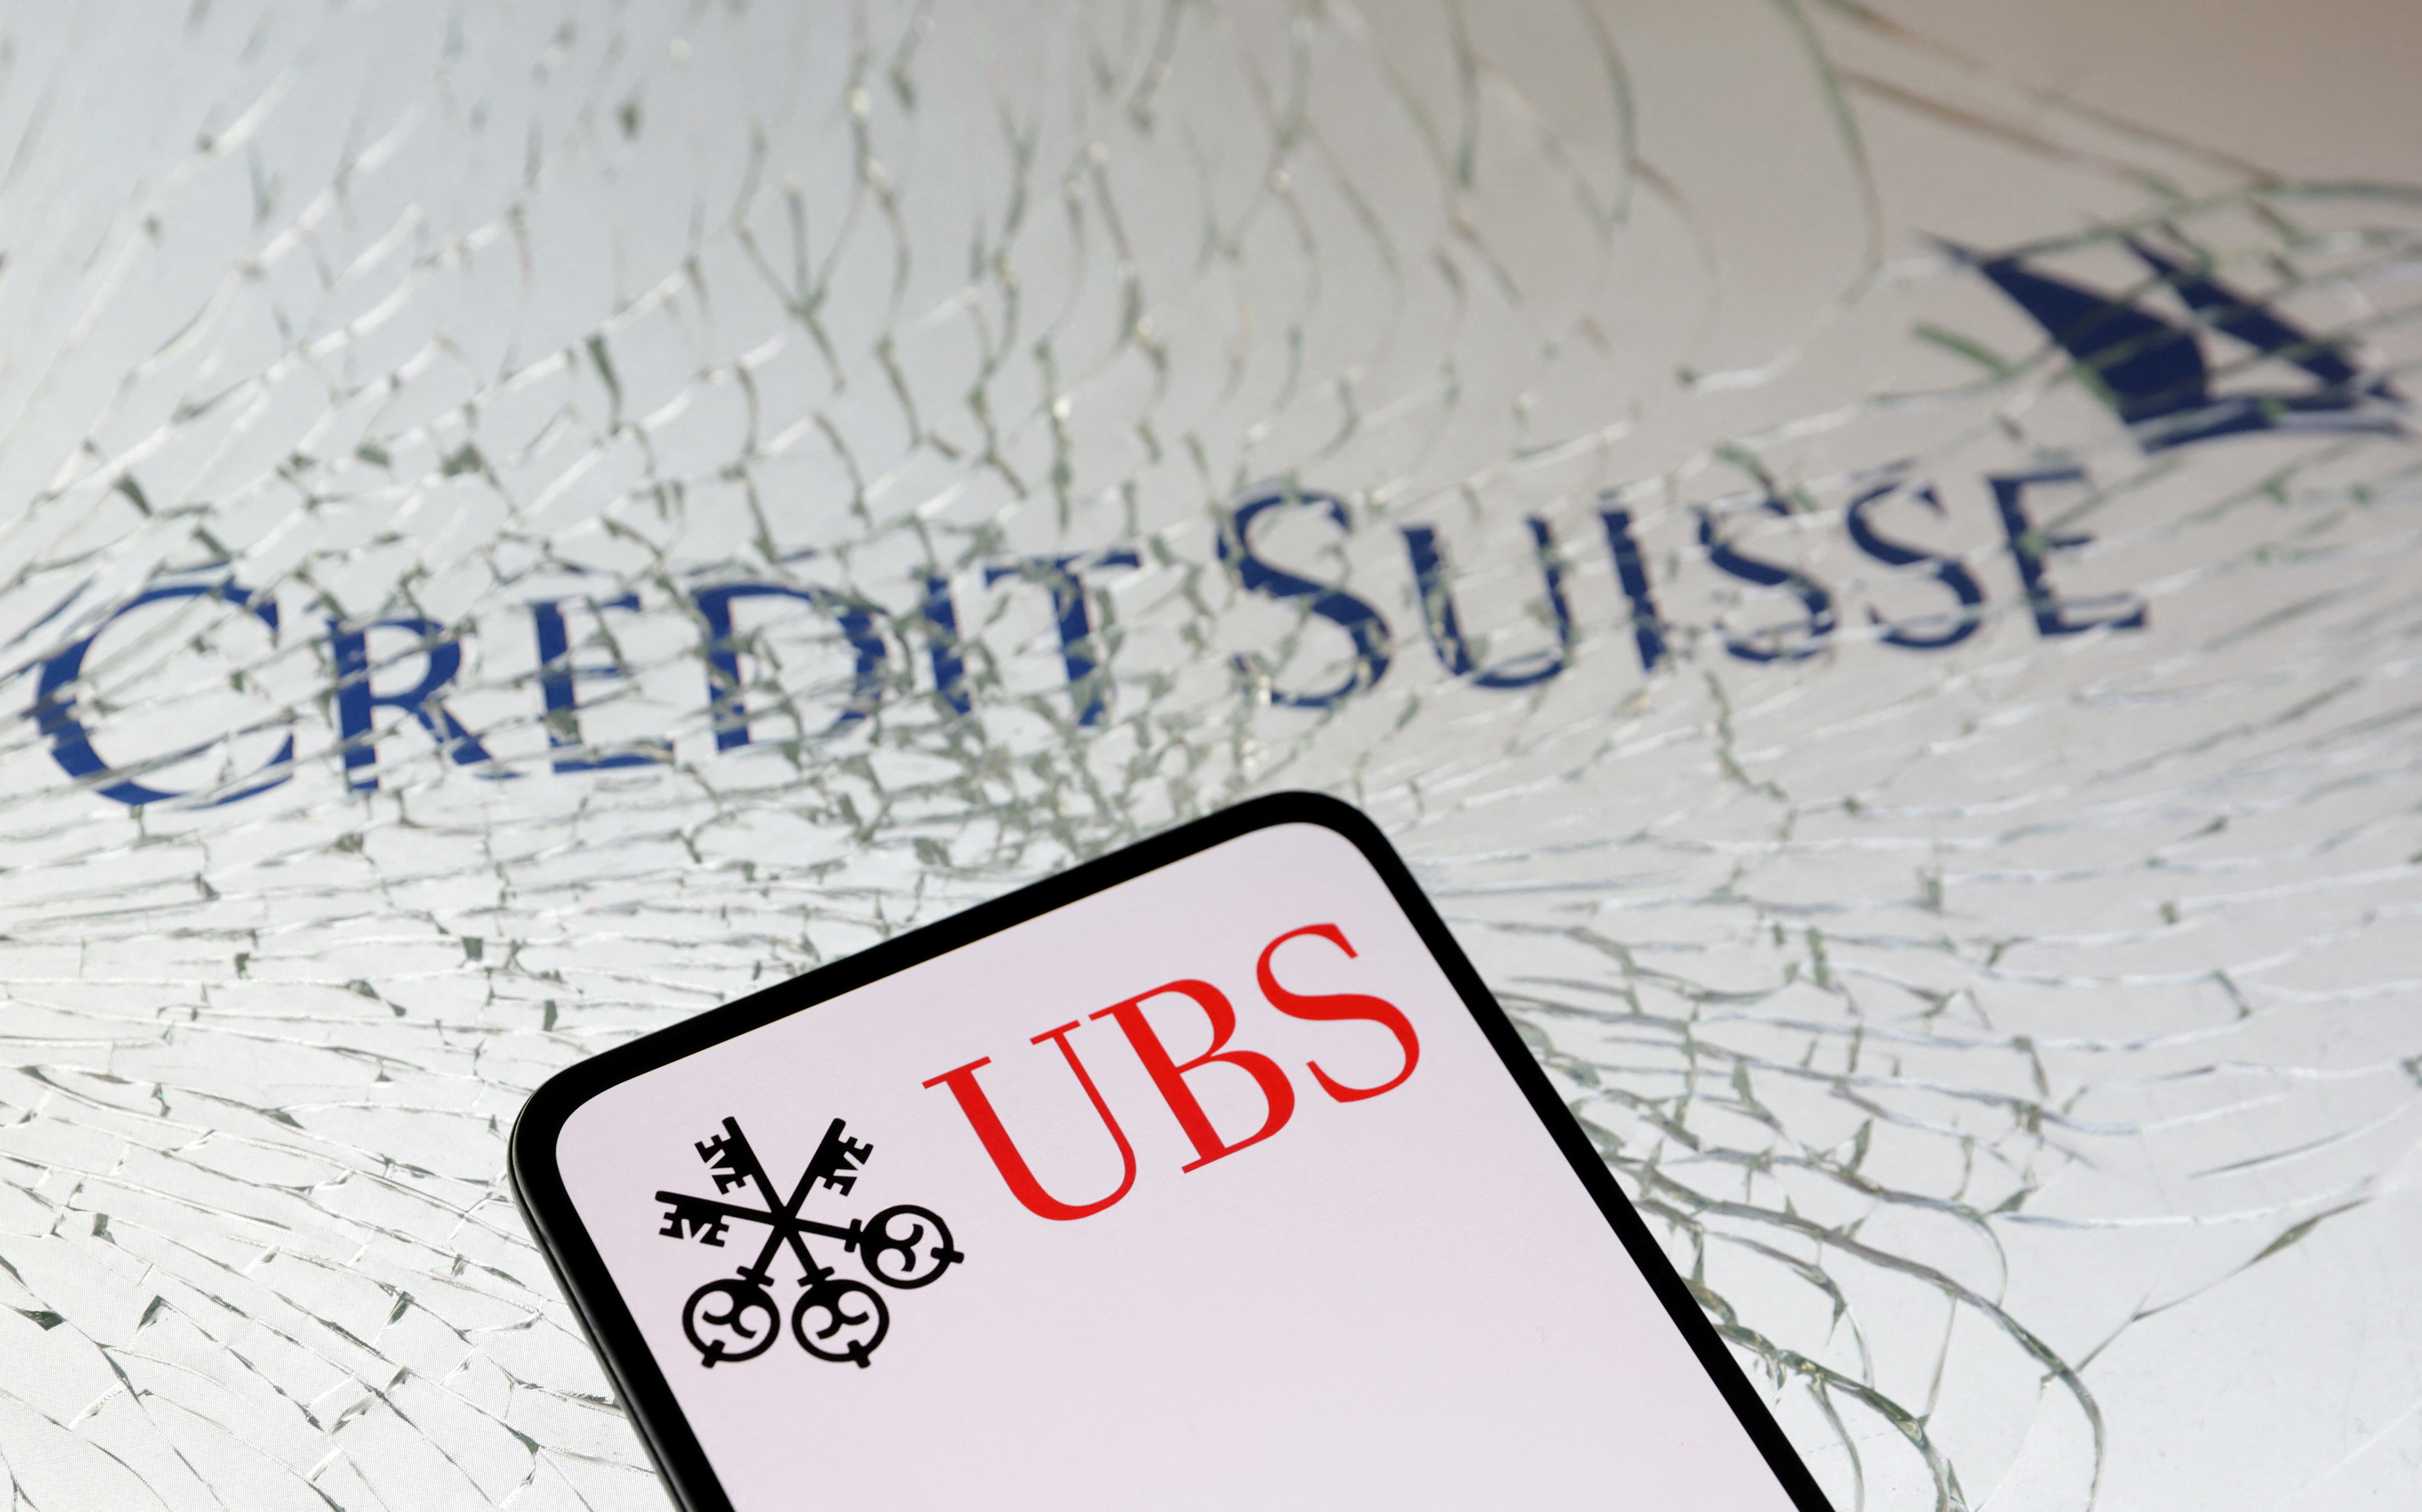 Crisis bancaria: frenéticas negociaciones para evitar el colapso de Credit Suisse fusionándolo con UBS